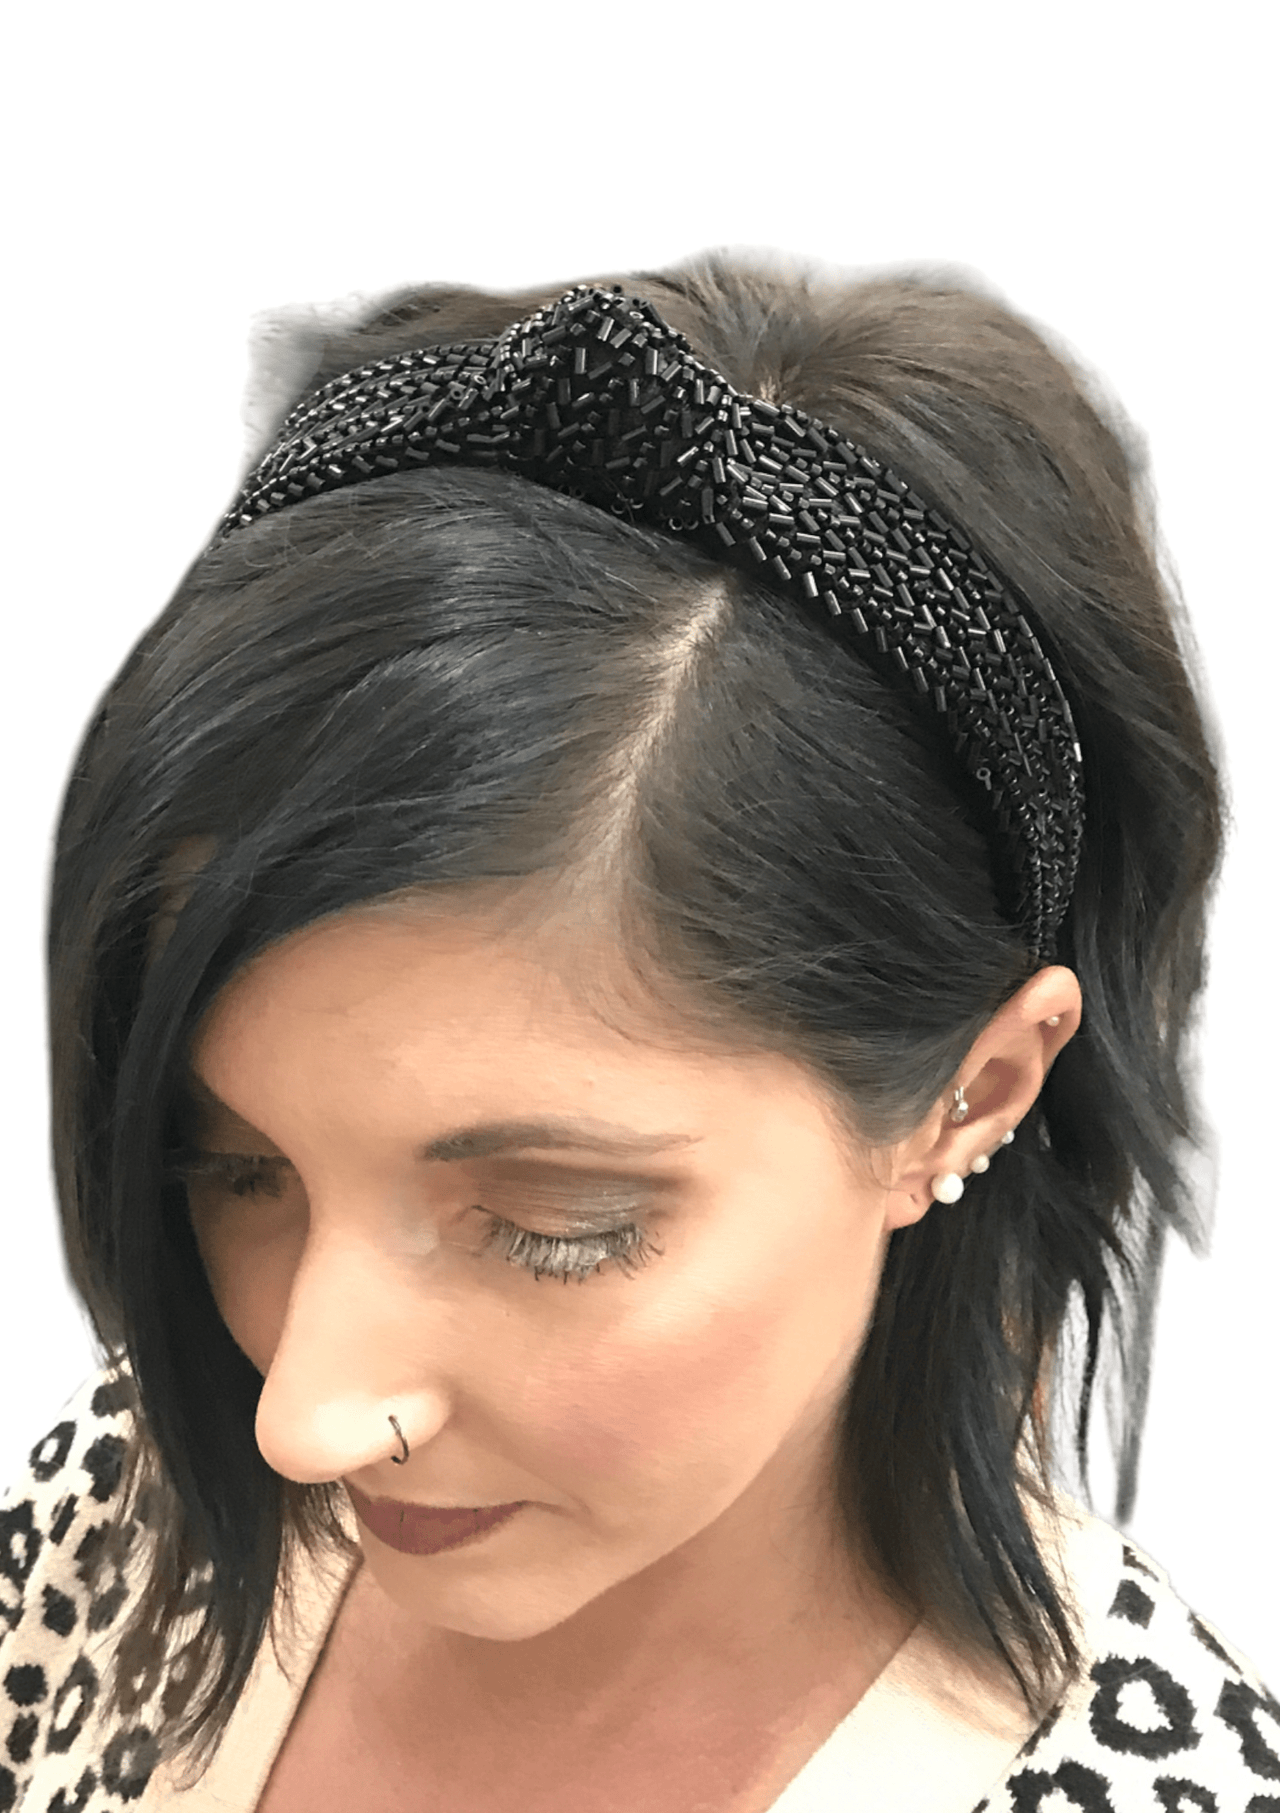 Soirée Beaded Headbands Two’s Company Black / Knot